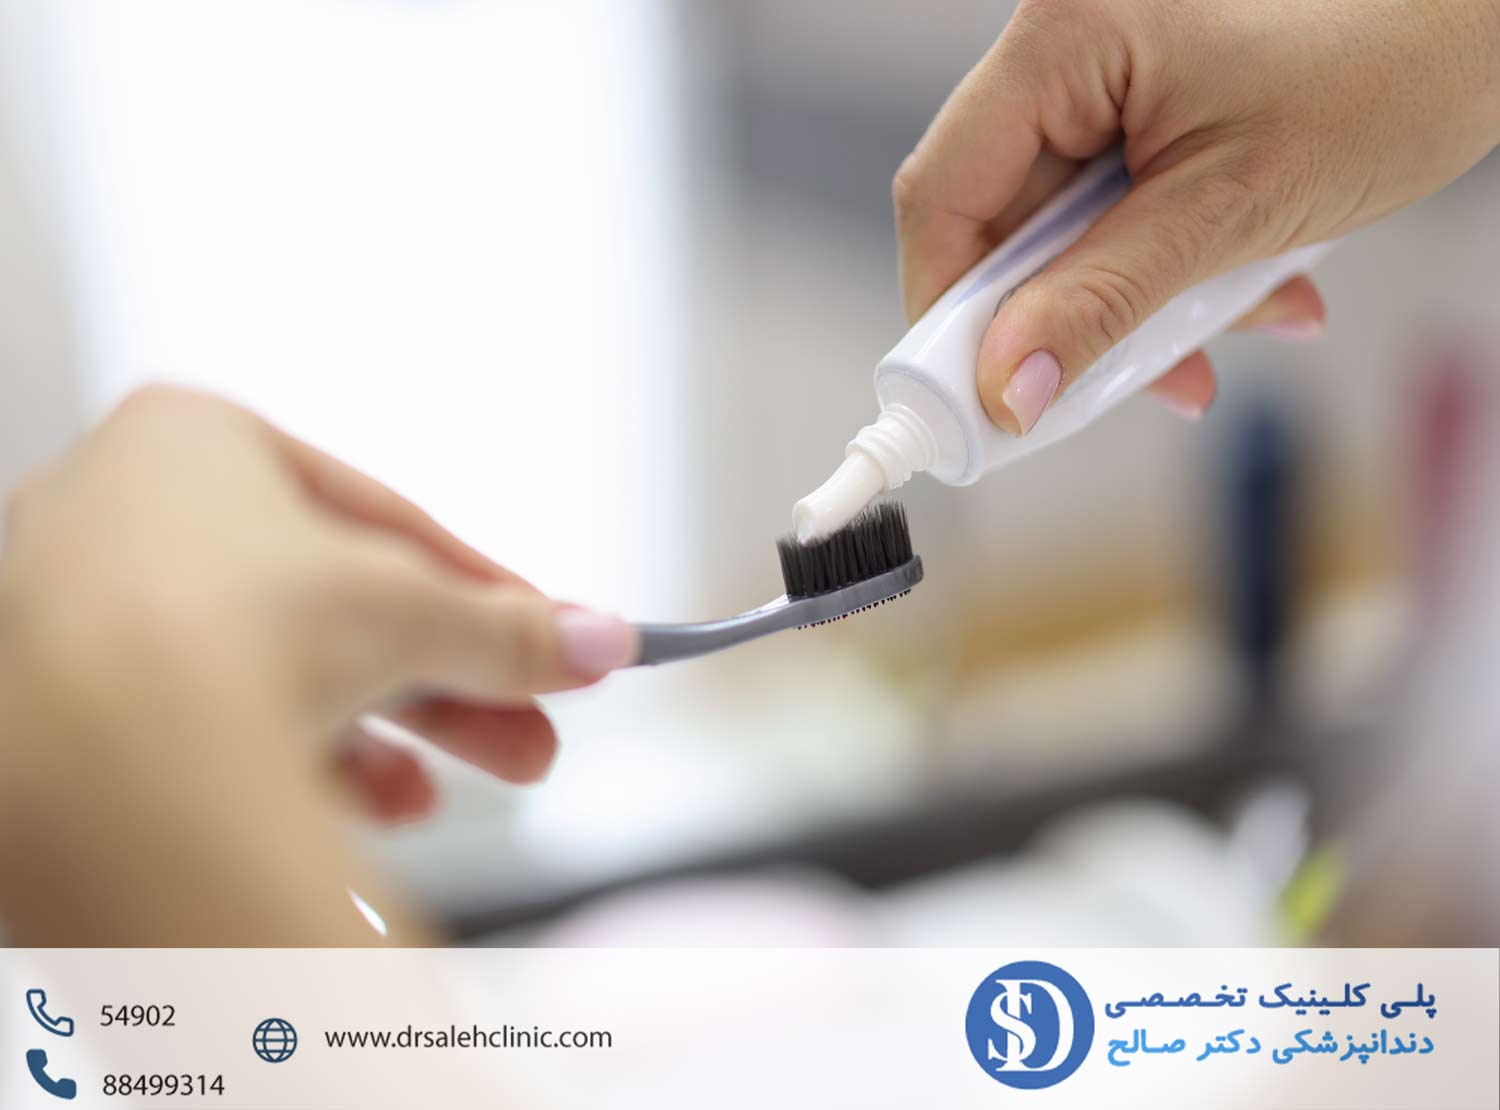 دندانپزشکی فاطمی- روش صحیح مسواک زدن